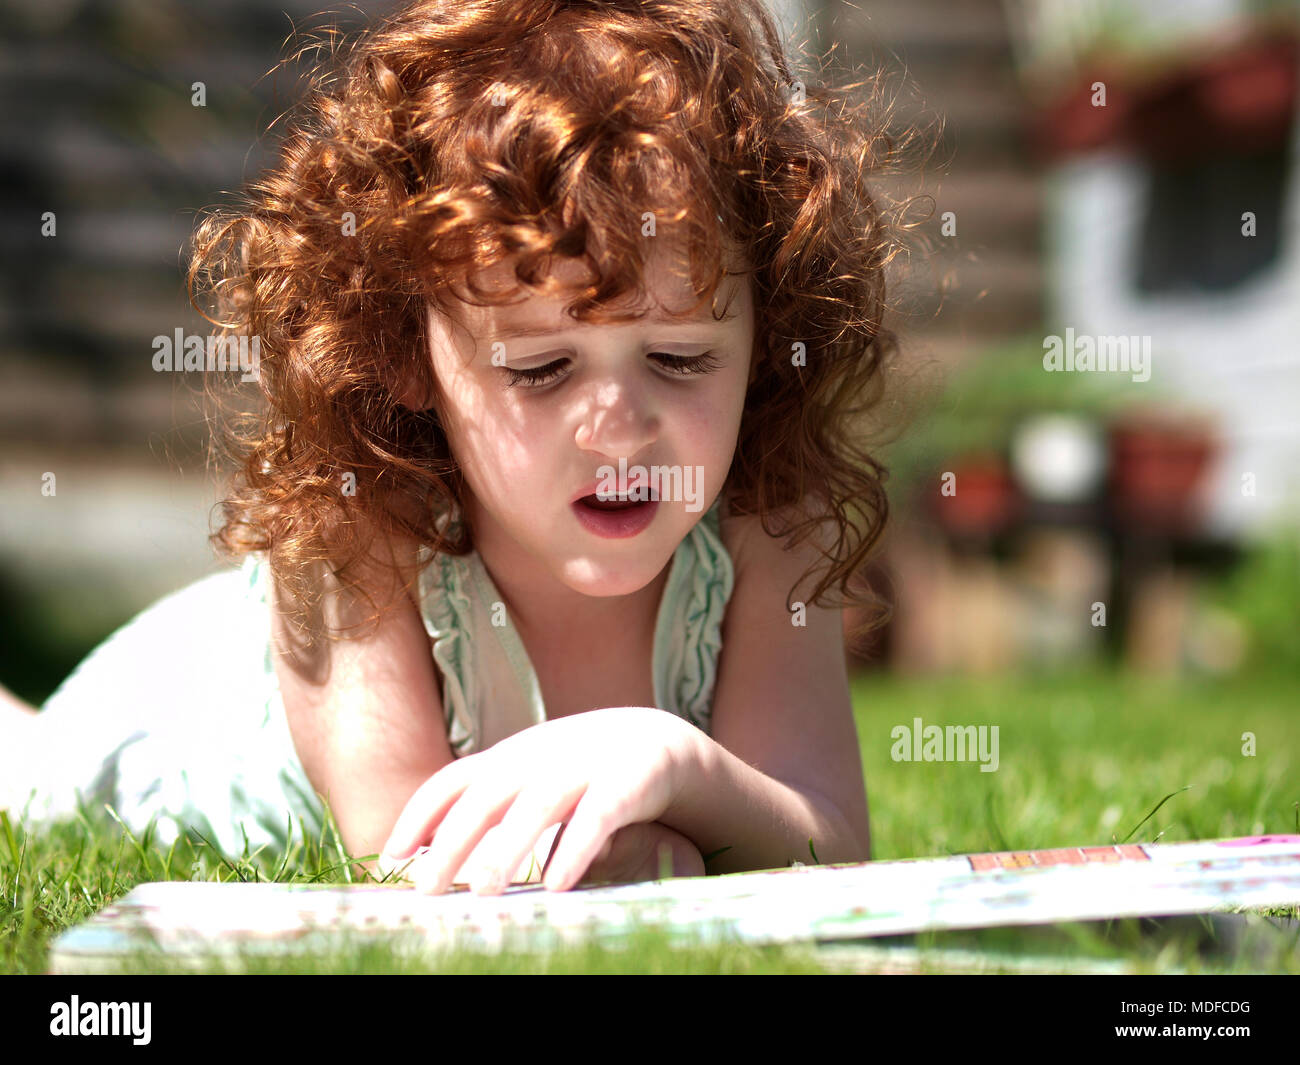 Paesaggio ritratto di un bambino di tre anni ragazza caucasica con ricci capelli auburn posa in erba in una giornata di sole mentre la lettura di un libro Foto Stock